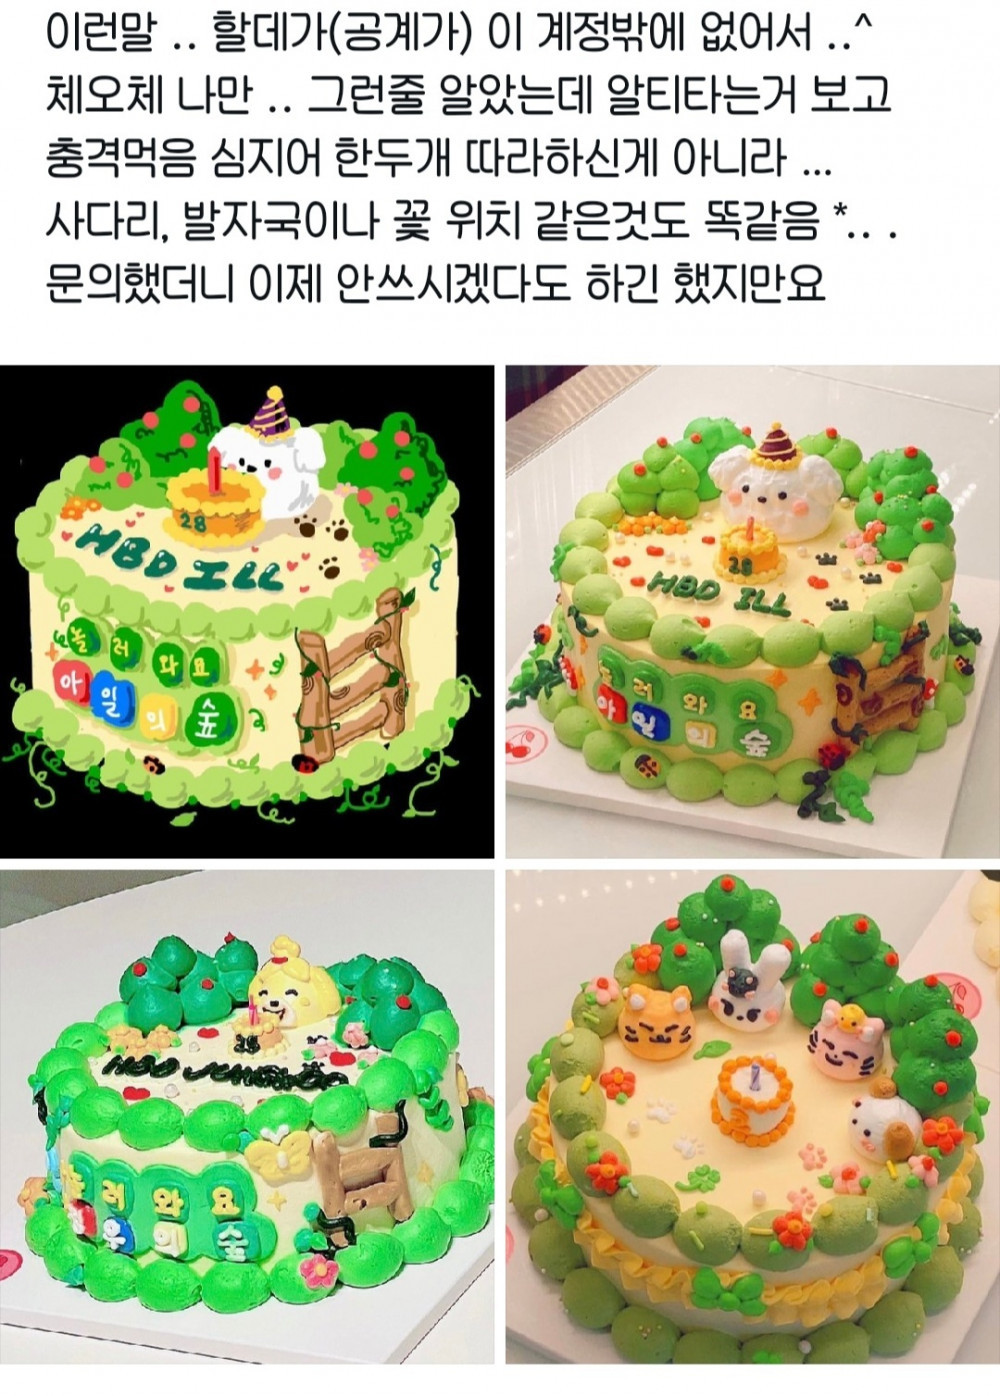 고객이 직접 디자인한 케이크를 다른 고객에게 똑같이 판 레터링 케이크집들